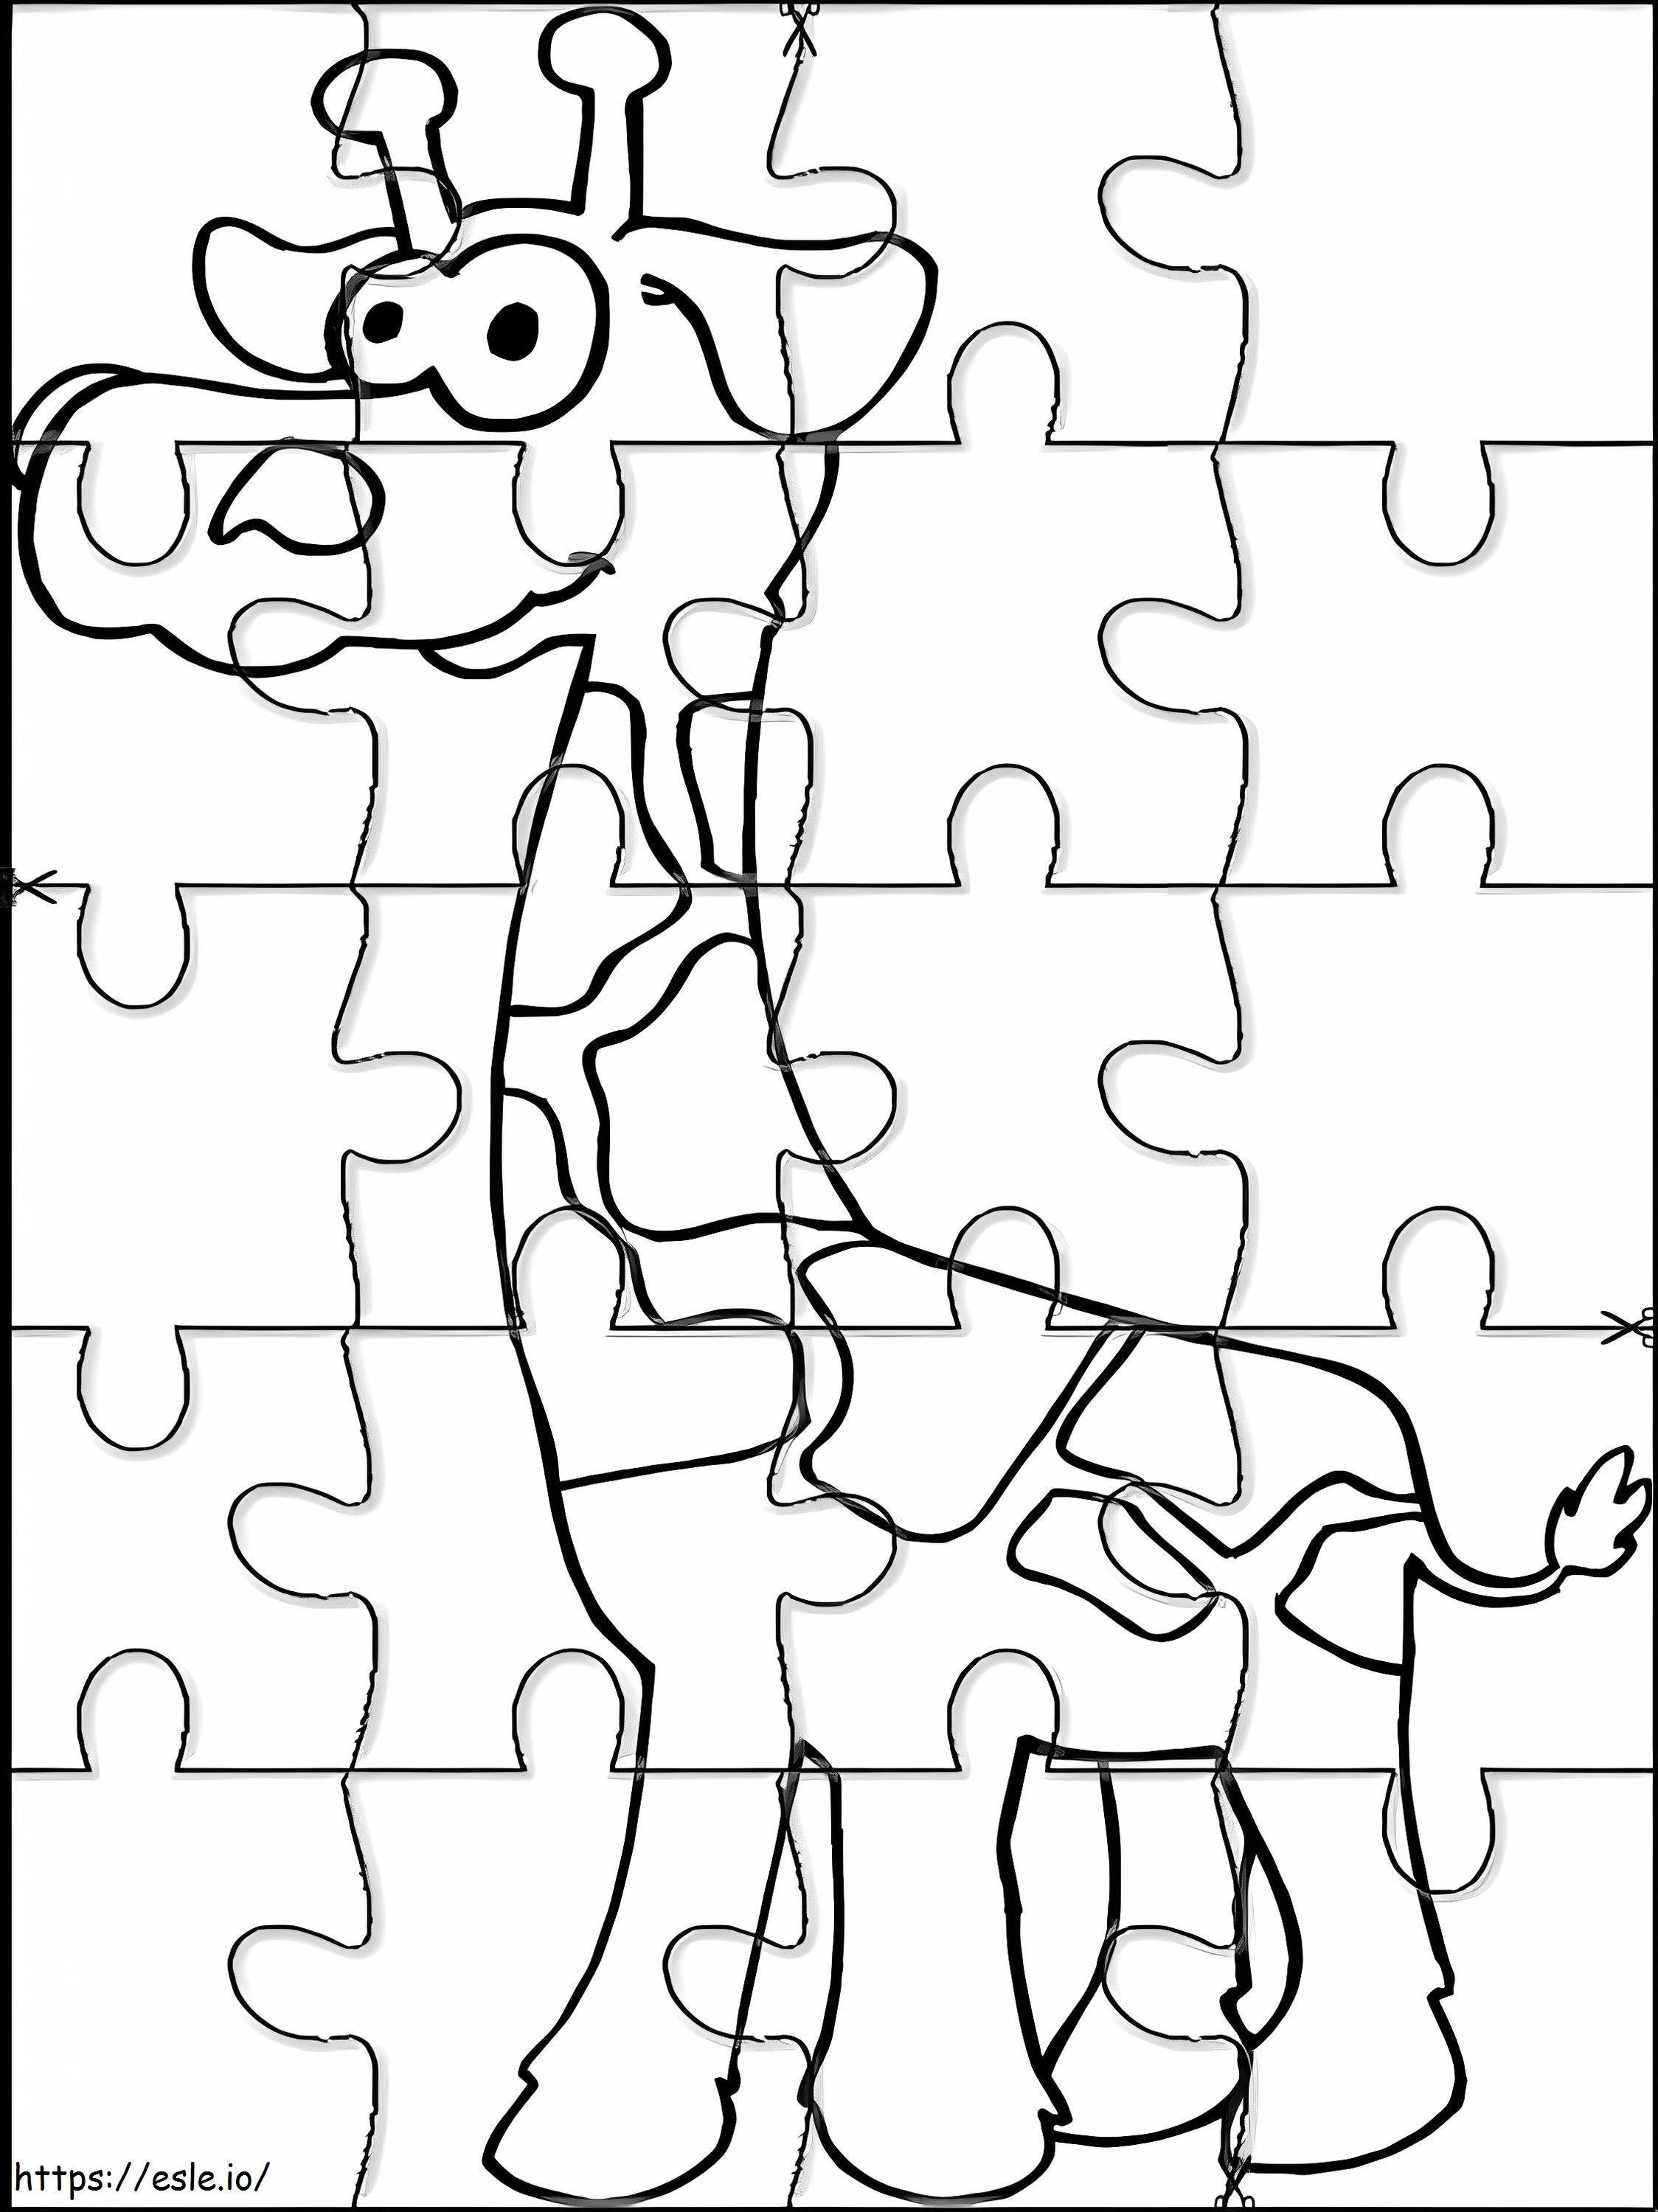 Giraffen-Puzzle ausmalbilder